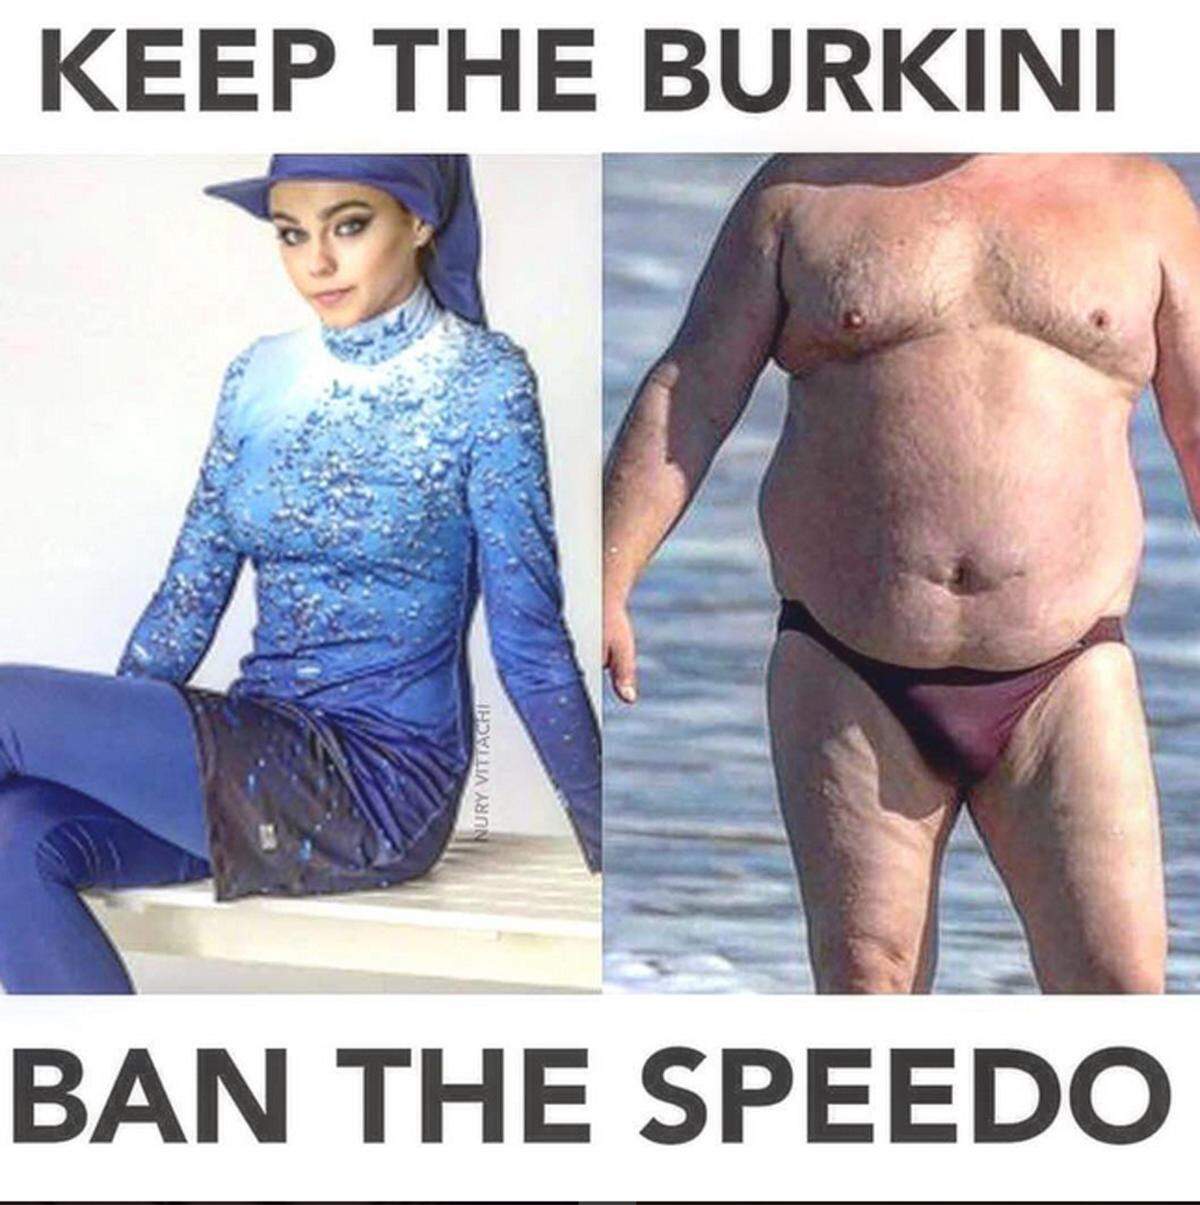 Anstatt Burkinis zu verbieten, würden einige lieber die zu engen Speedos für Männer verbannen.